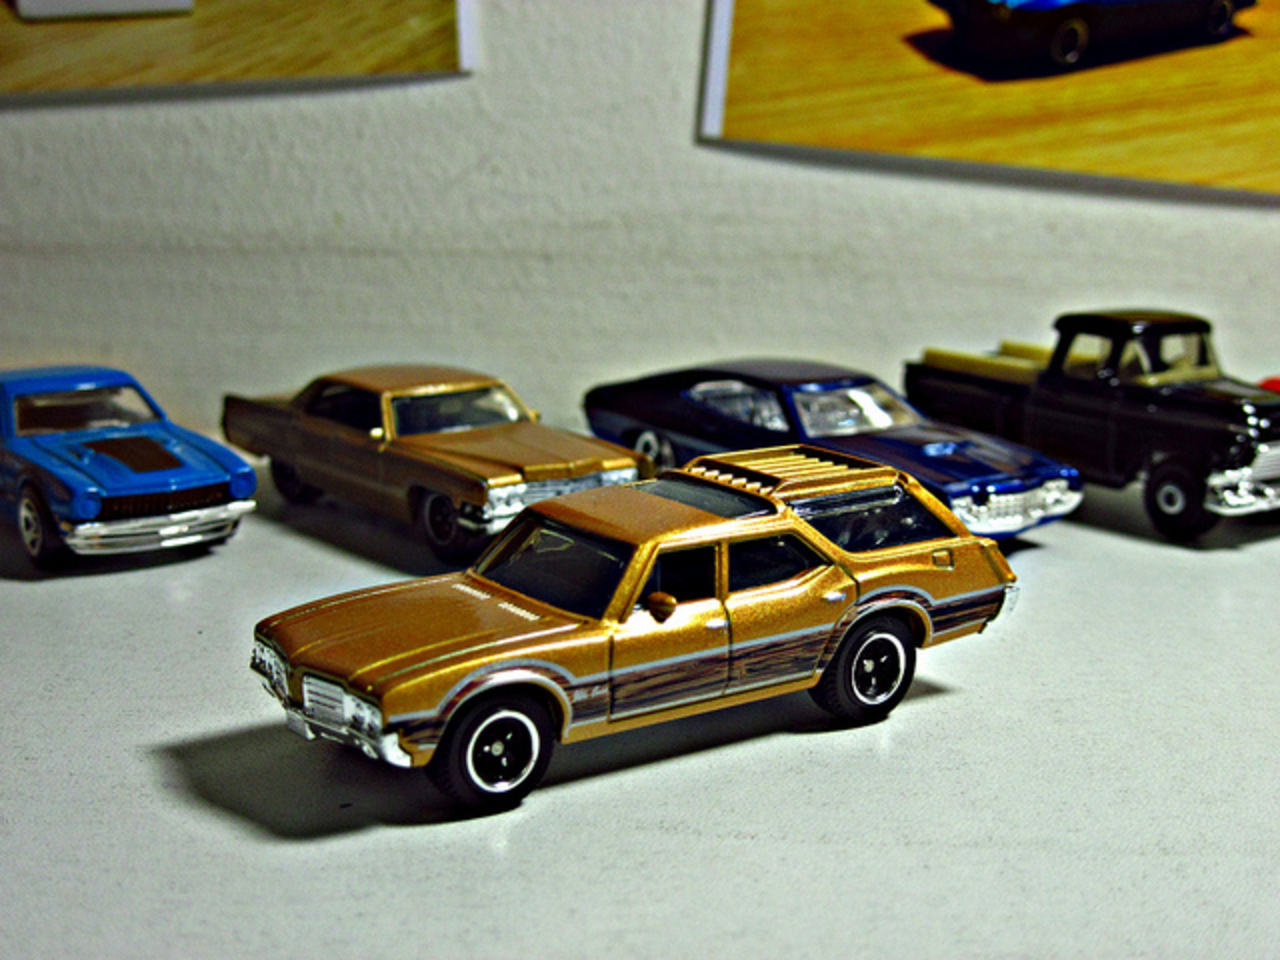 71 Oldsmobile Vista Cruiser / Flickr - Partage de photos!